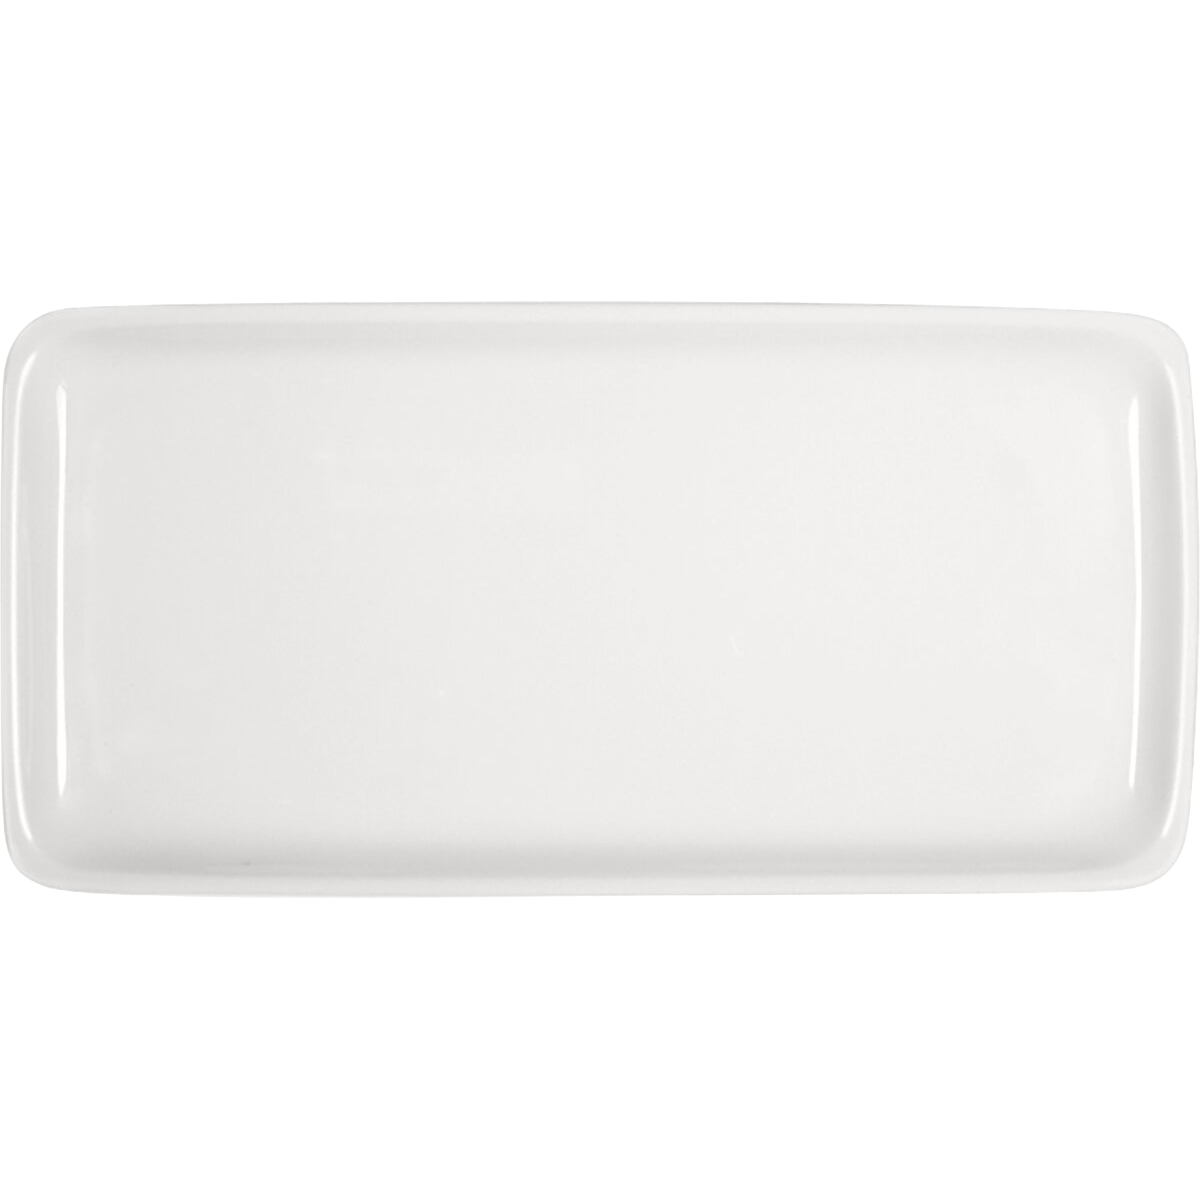 Bauscher B1100 Platte rechteckig 30 x 15 cm